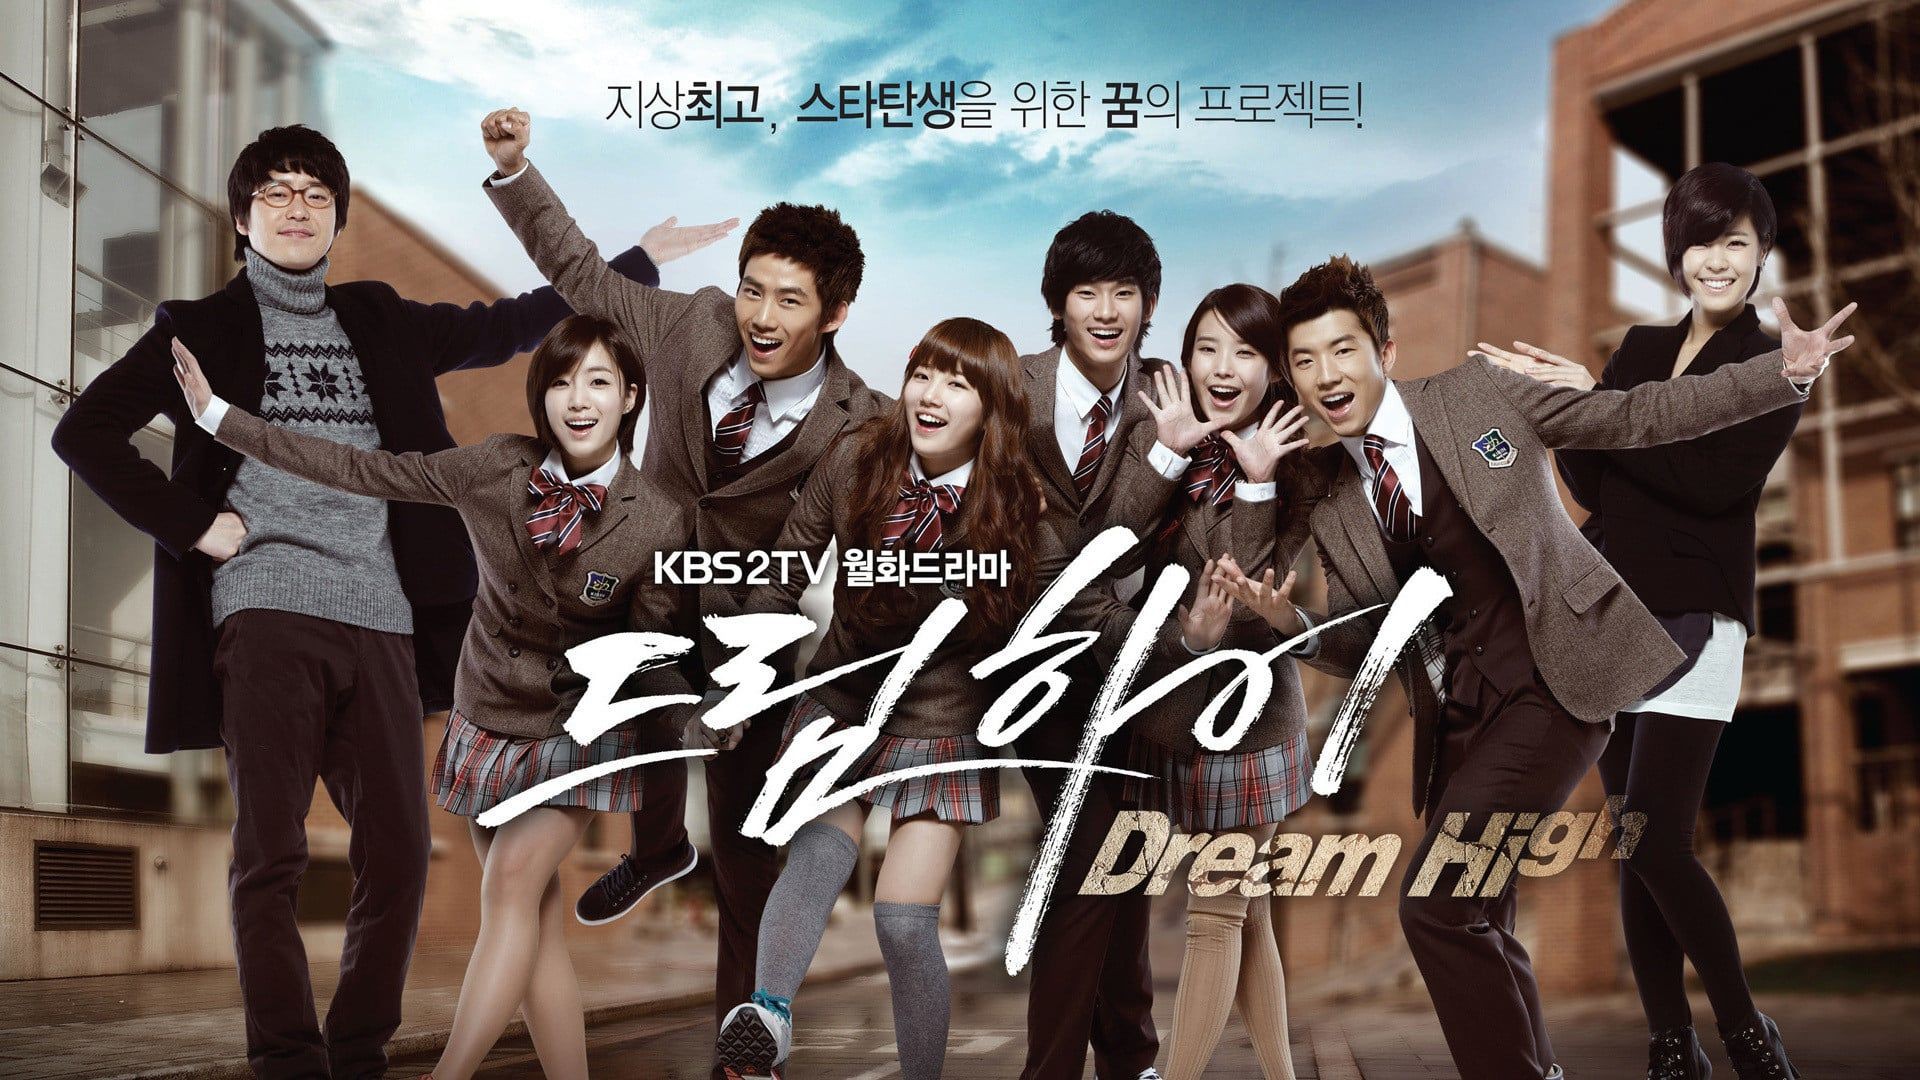 6 phim Hàn có đề tài thanh xuân vườn trường: Số 2 nổi nhất nhưng số 4 mới khiến các fan Kpop rạo rực - Ảnh 8.